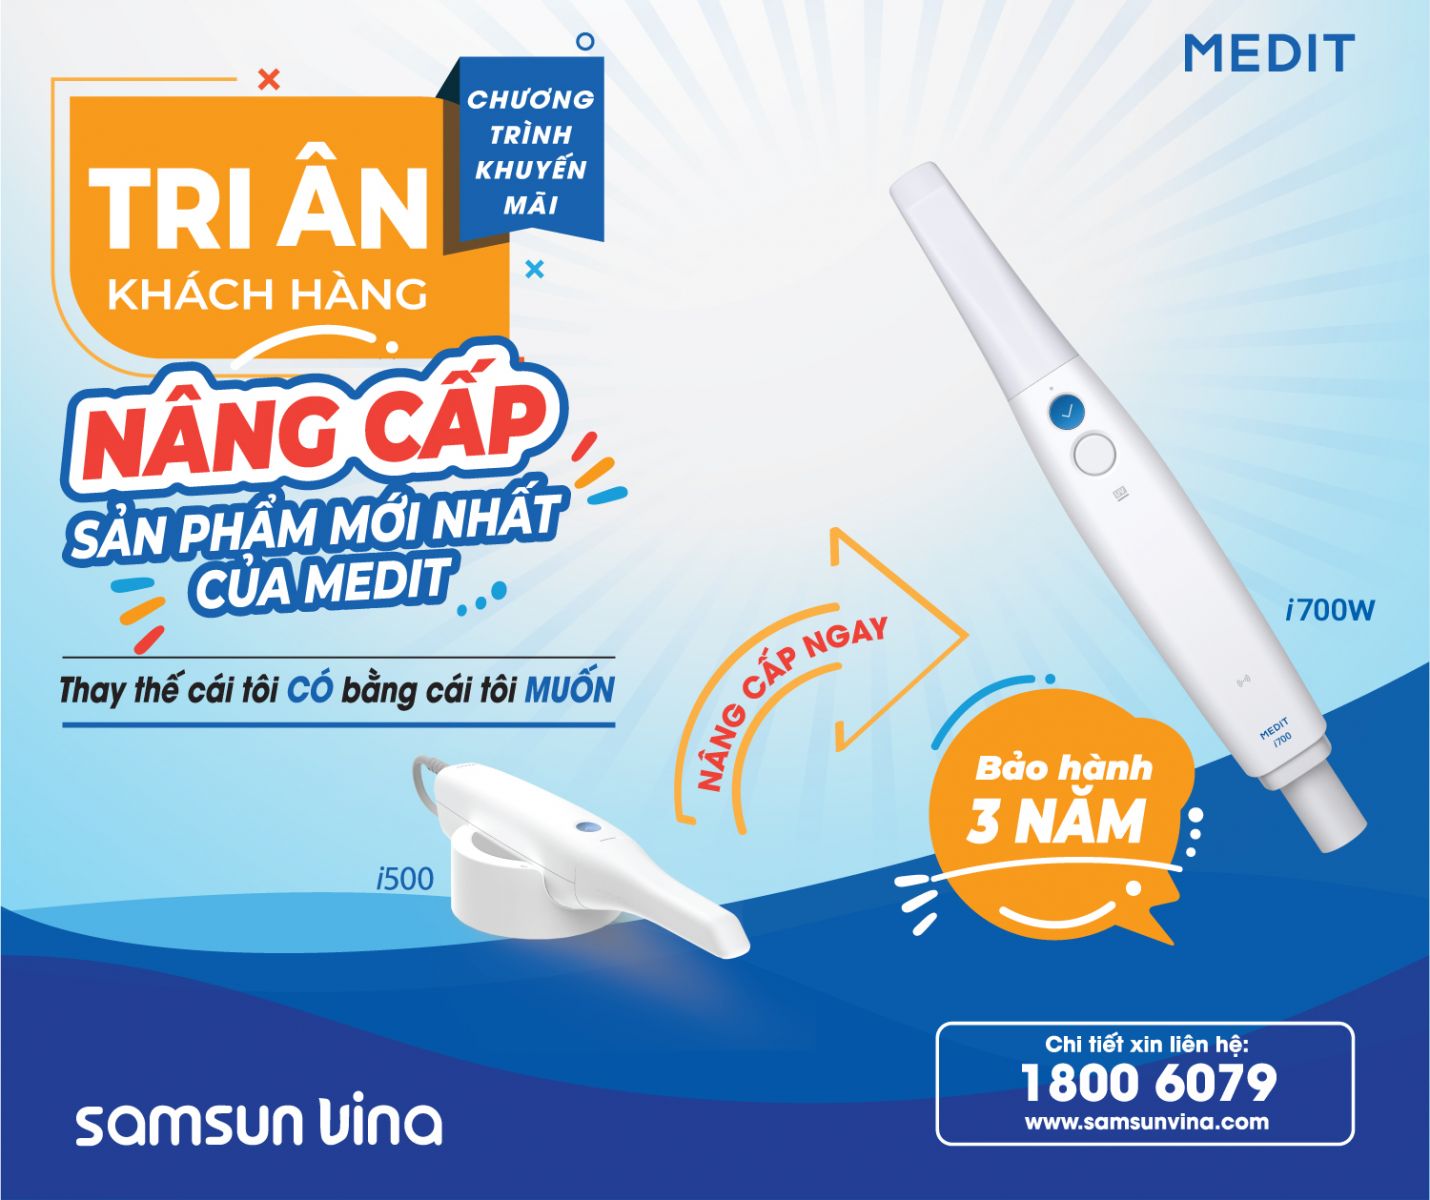 Samsun Vina tri ân khách hàng - Nâng cấp máy scan trong miệng Medit I700w mới nhất 